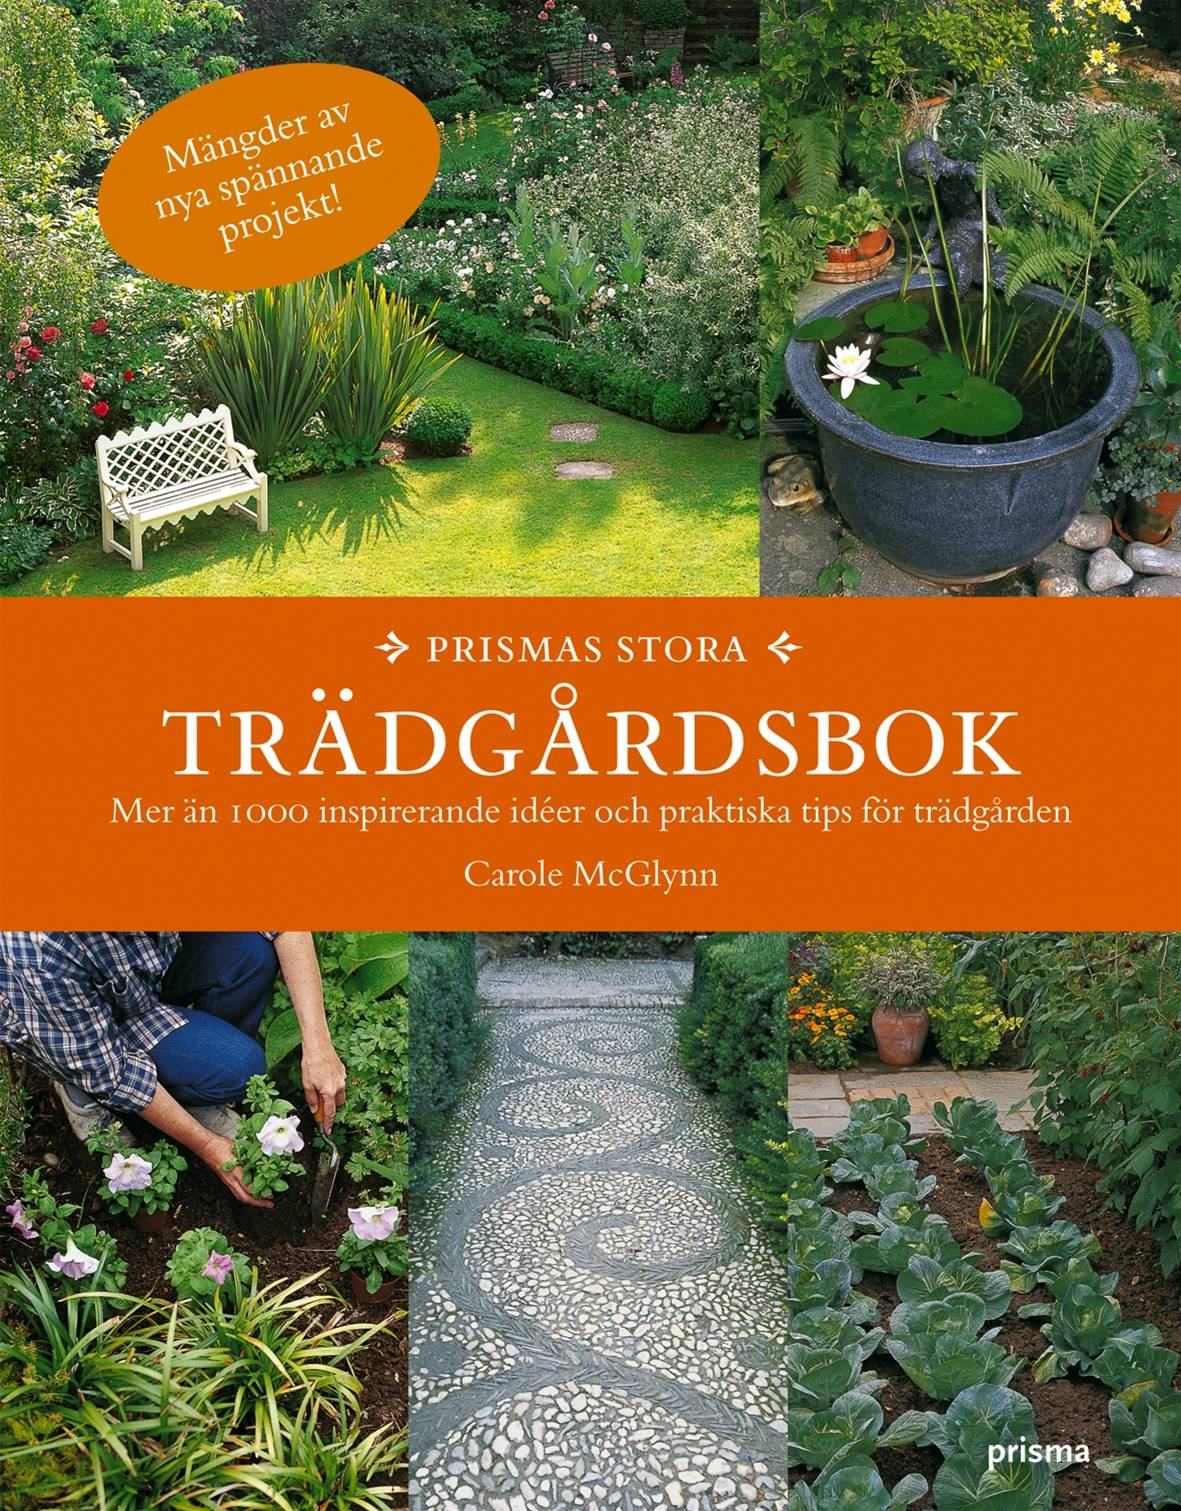 Prismas stora trädgårdsbok : mer än 1000 inspirerande idéer och praktiska tips för trädgården